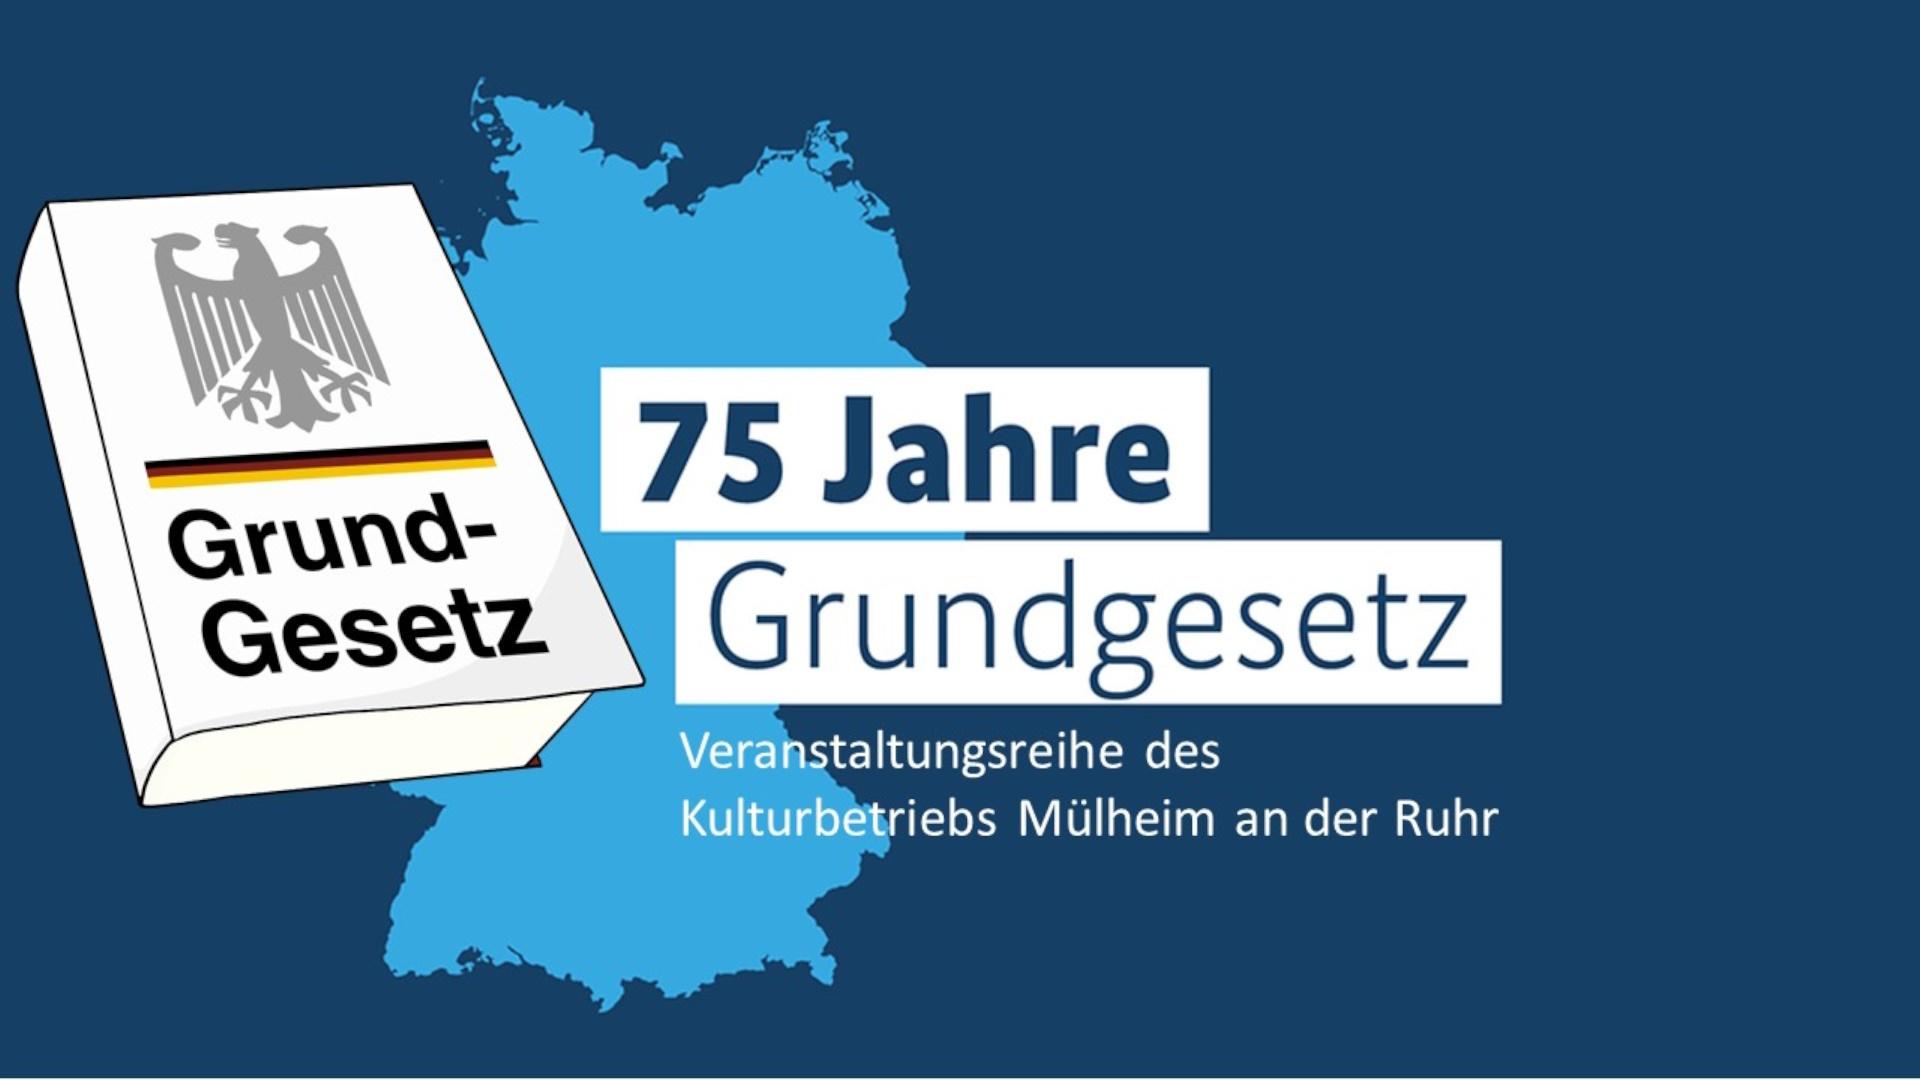 Das Bild zeigt die Zeichnung von einem Buch, im Hintergrund der Umriss von Deutschland und daneben der Schriftzug "75 Jahre Grundgesetz" - eine Veranstaltungsreihe des Kulturbetriebs Mülheim an der Ruhr.